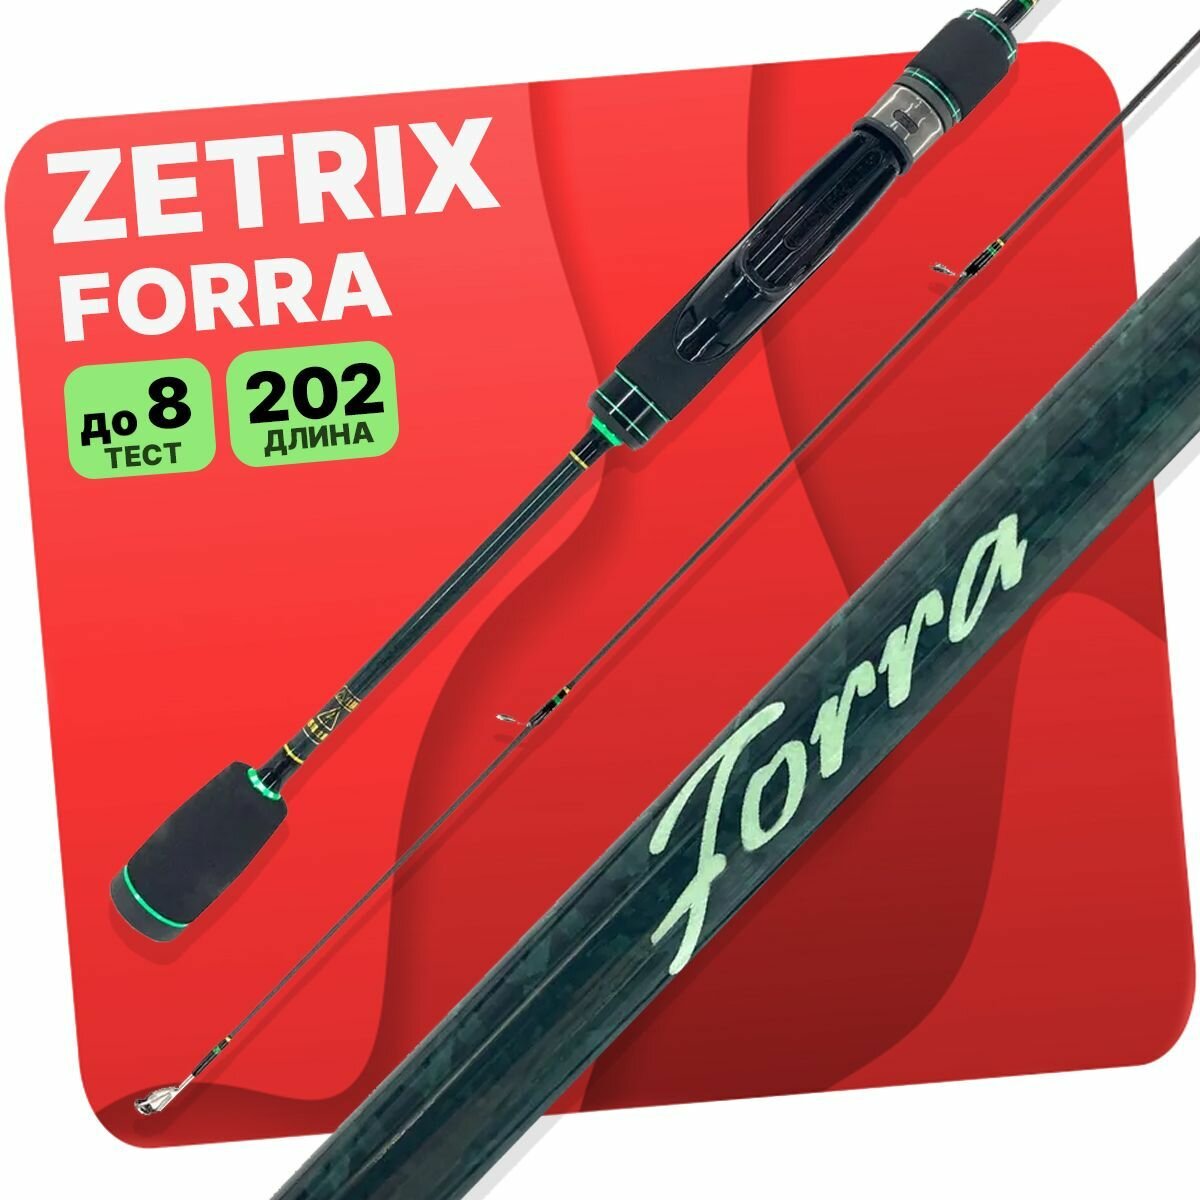 Zetrix Forra FRS-672L 201 см. 1.5-8 гр.